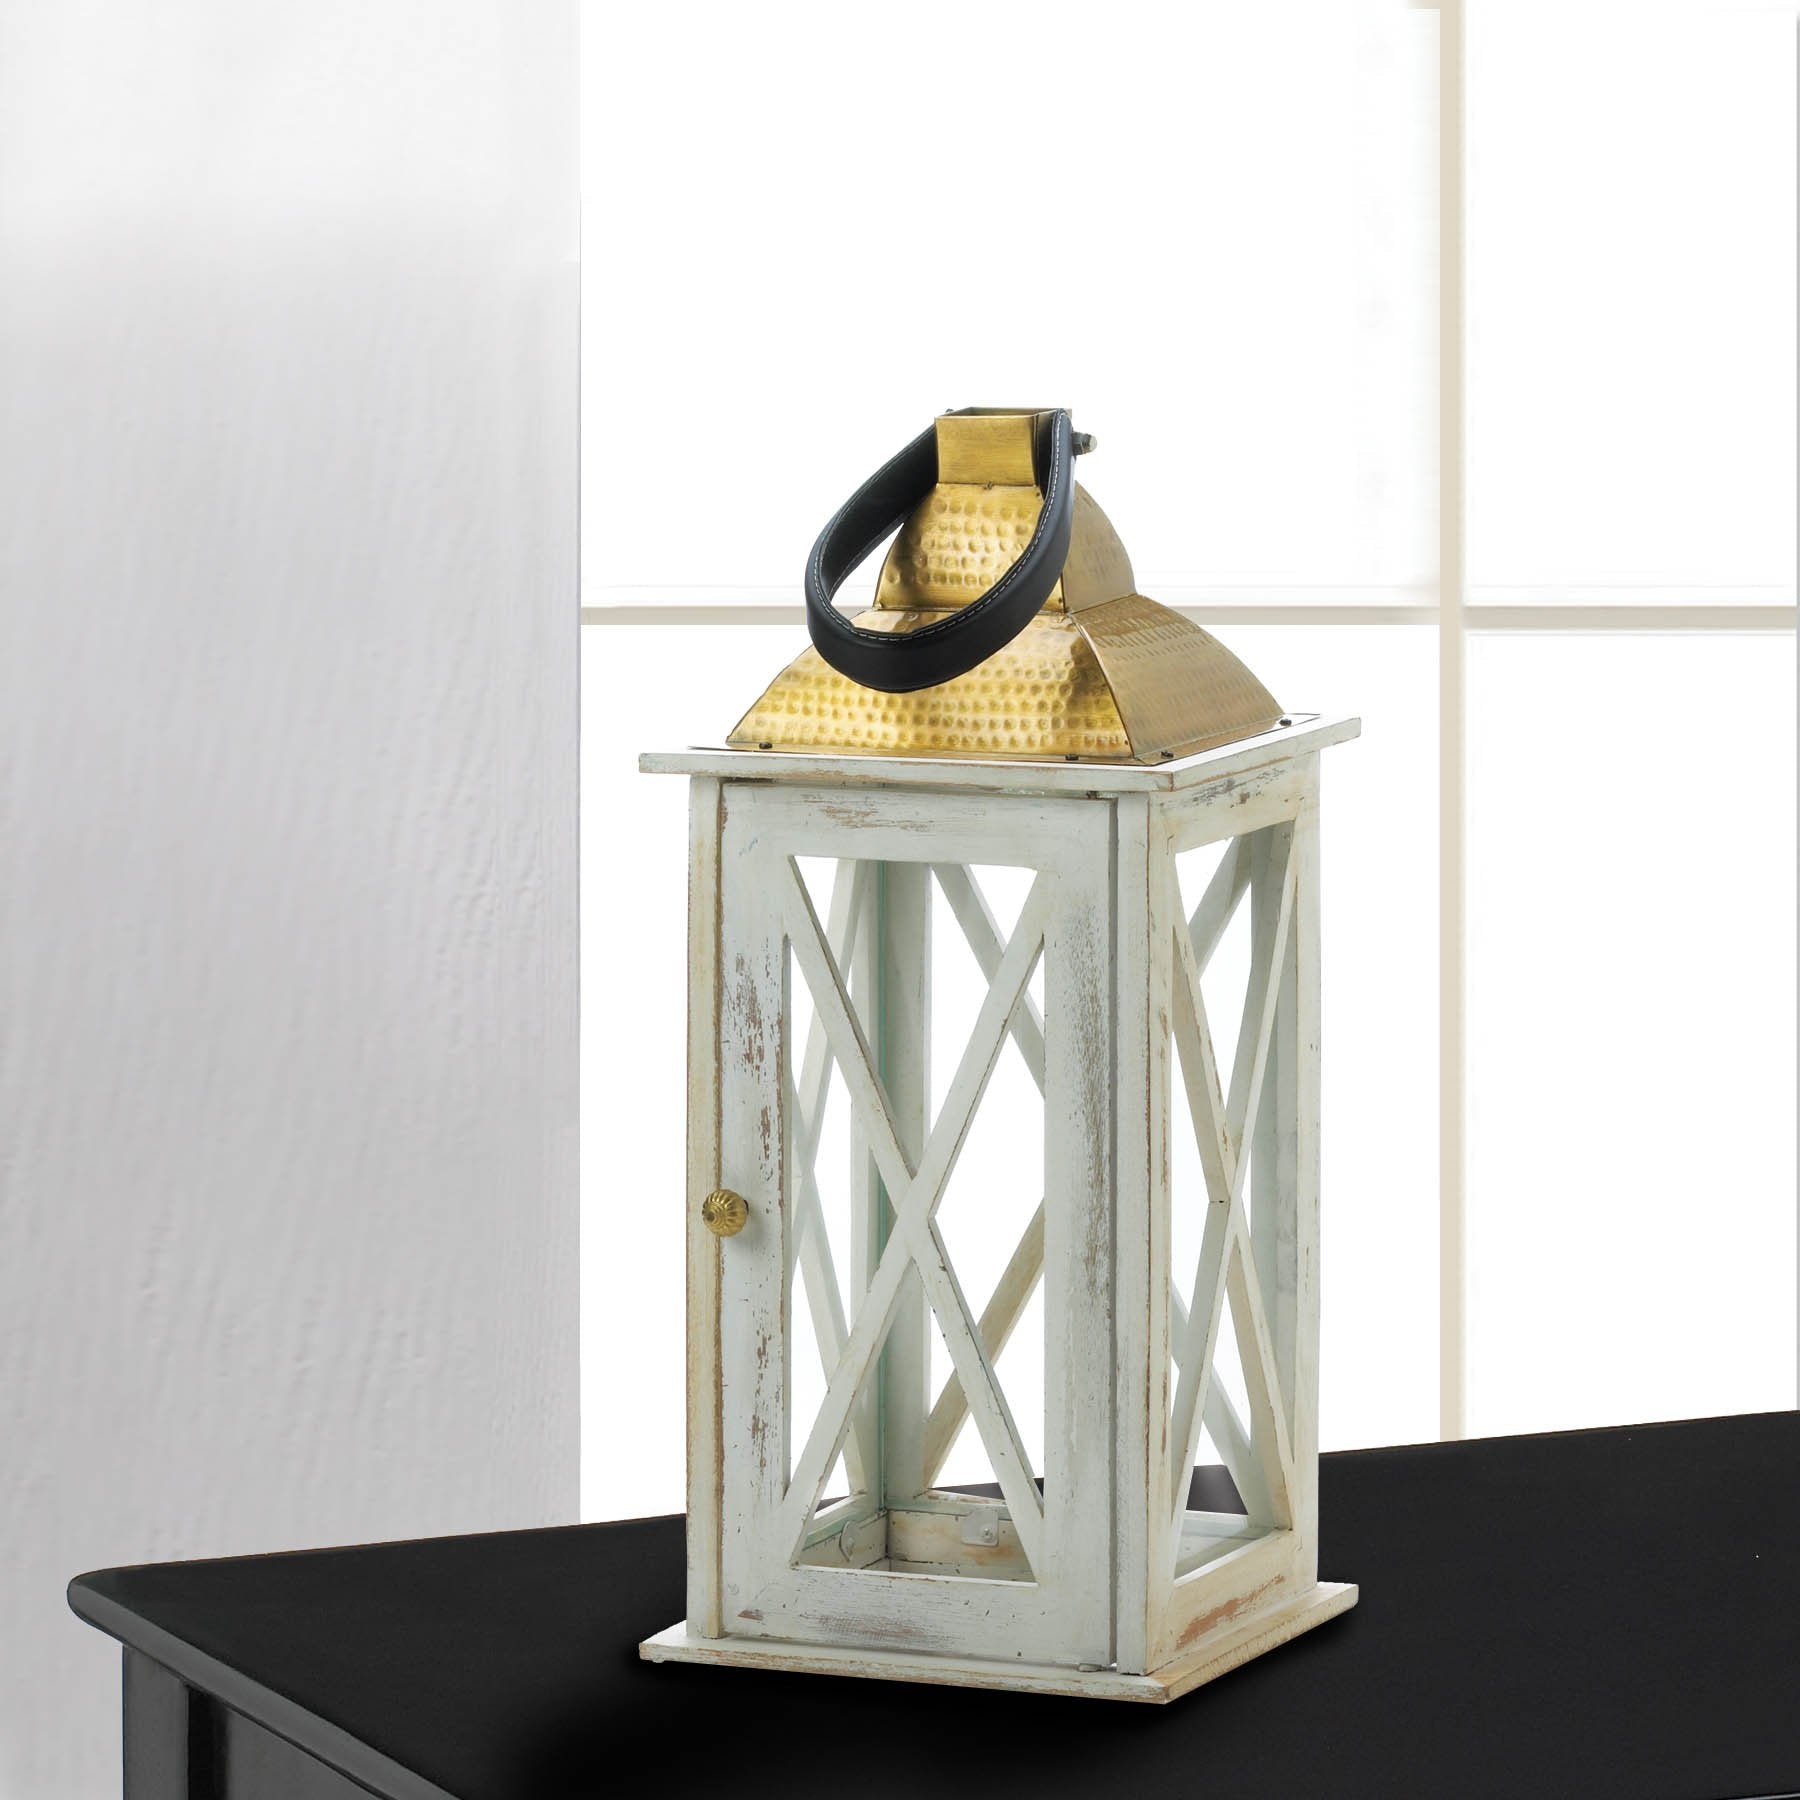 Savannah Medium White Lantern